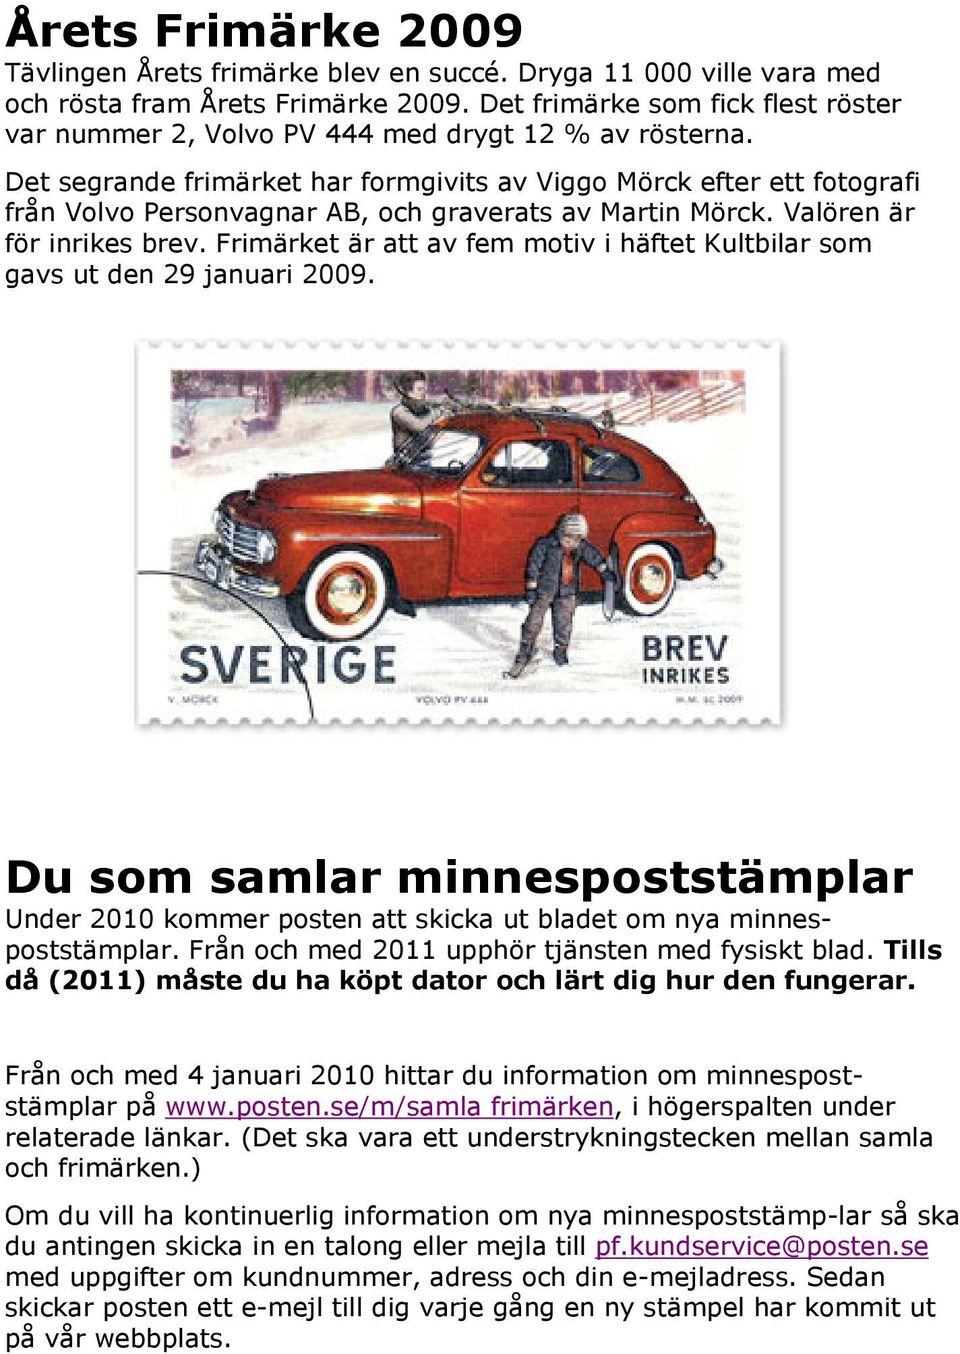 Det segrande frimärket har formgivits av Viggo Mörck efter ett fotografi från Volvo Personvagnar AB, och graverats av Martin Mörck. Valören är för inrikes brev.